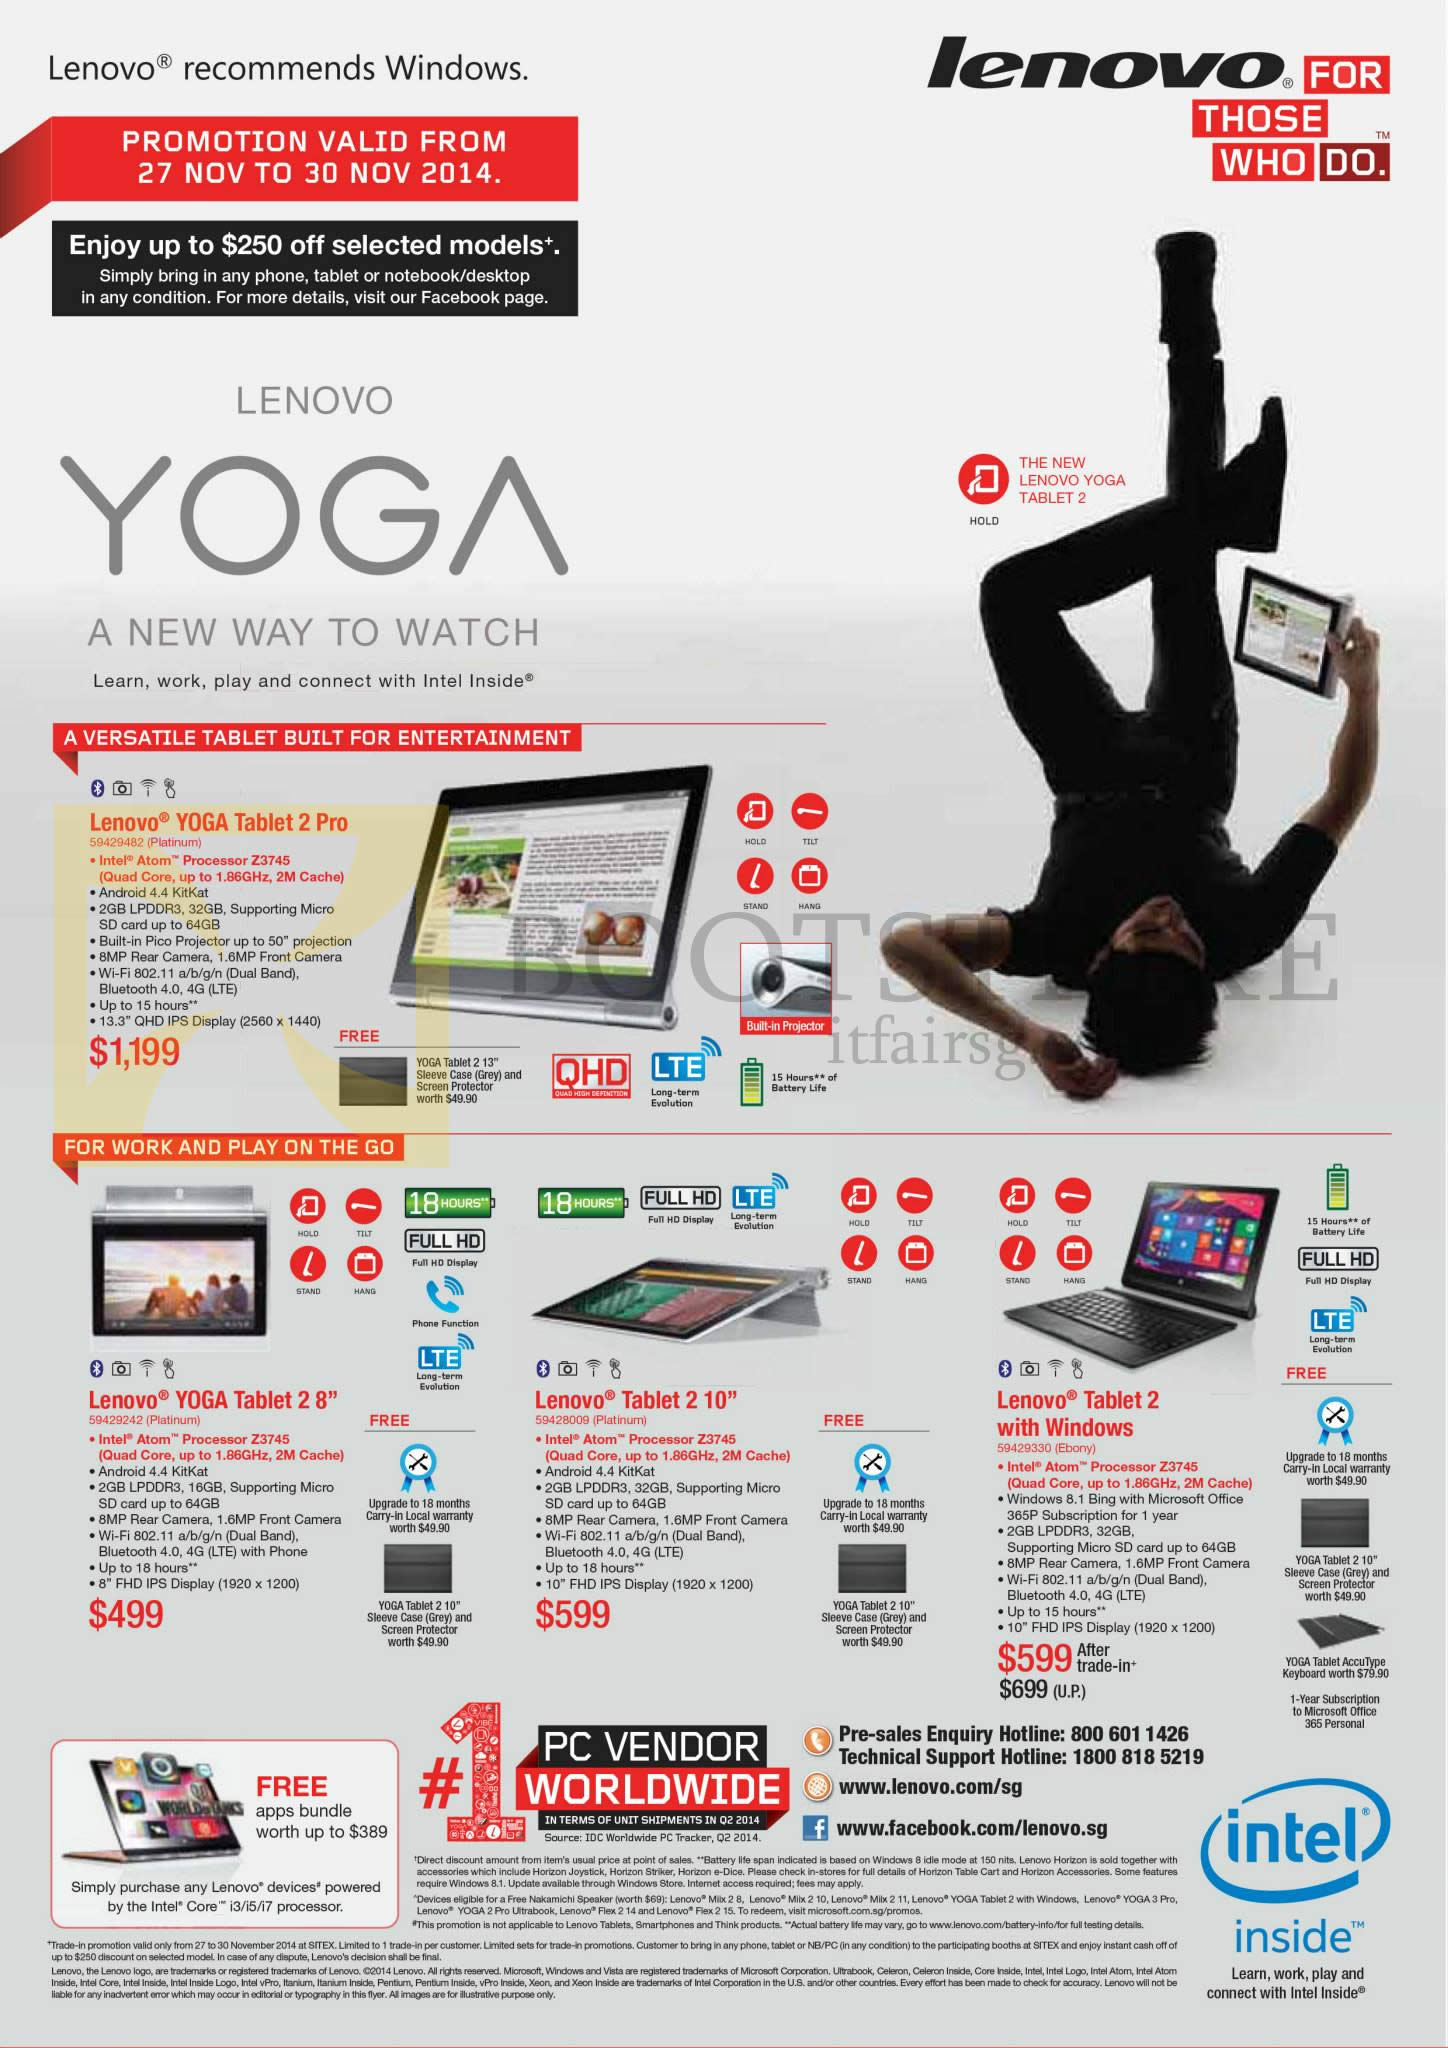 SITEX 2014 price list image brochure of Lenovo Tablets Yoga 2 Pro, Yoga 2 8.0, Yoga 2 10.0, Yoga 2, Tablet 2